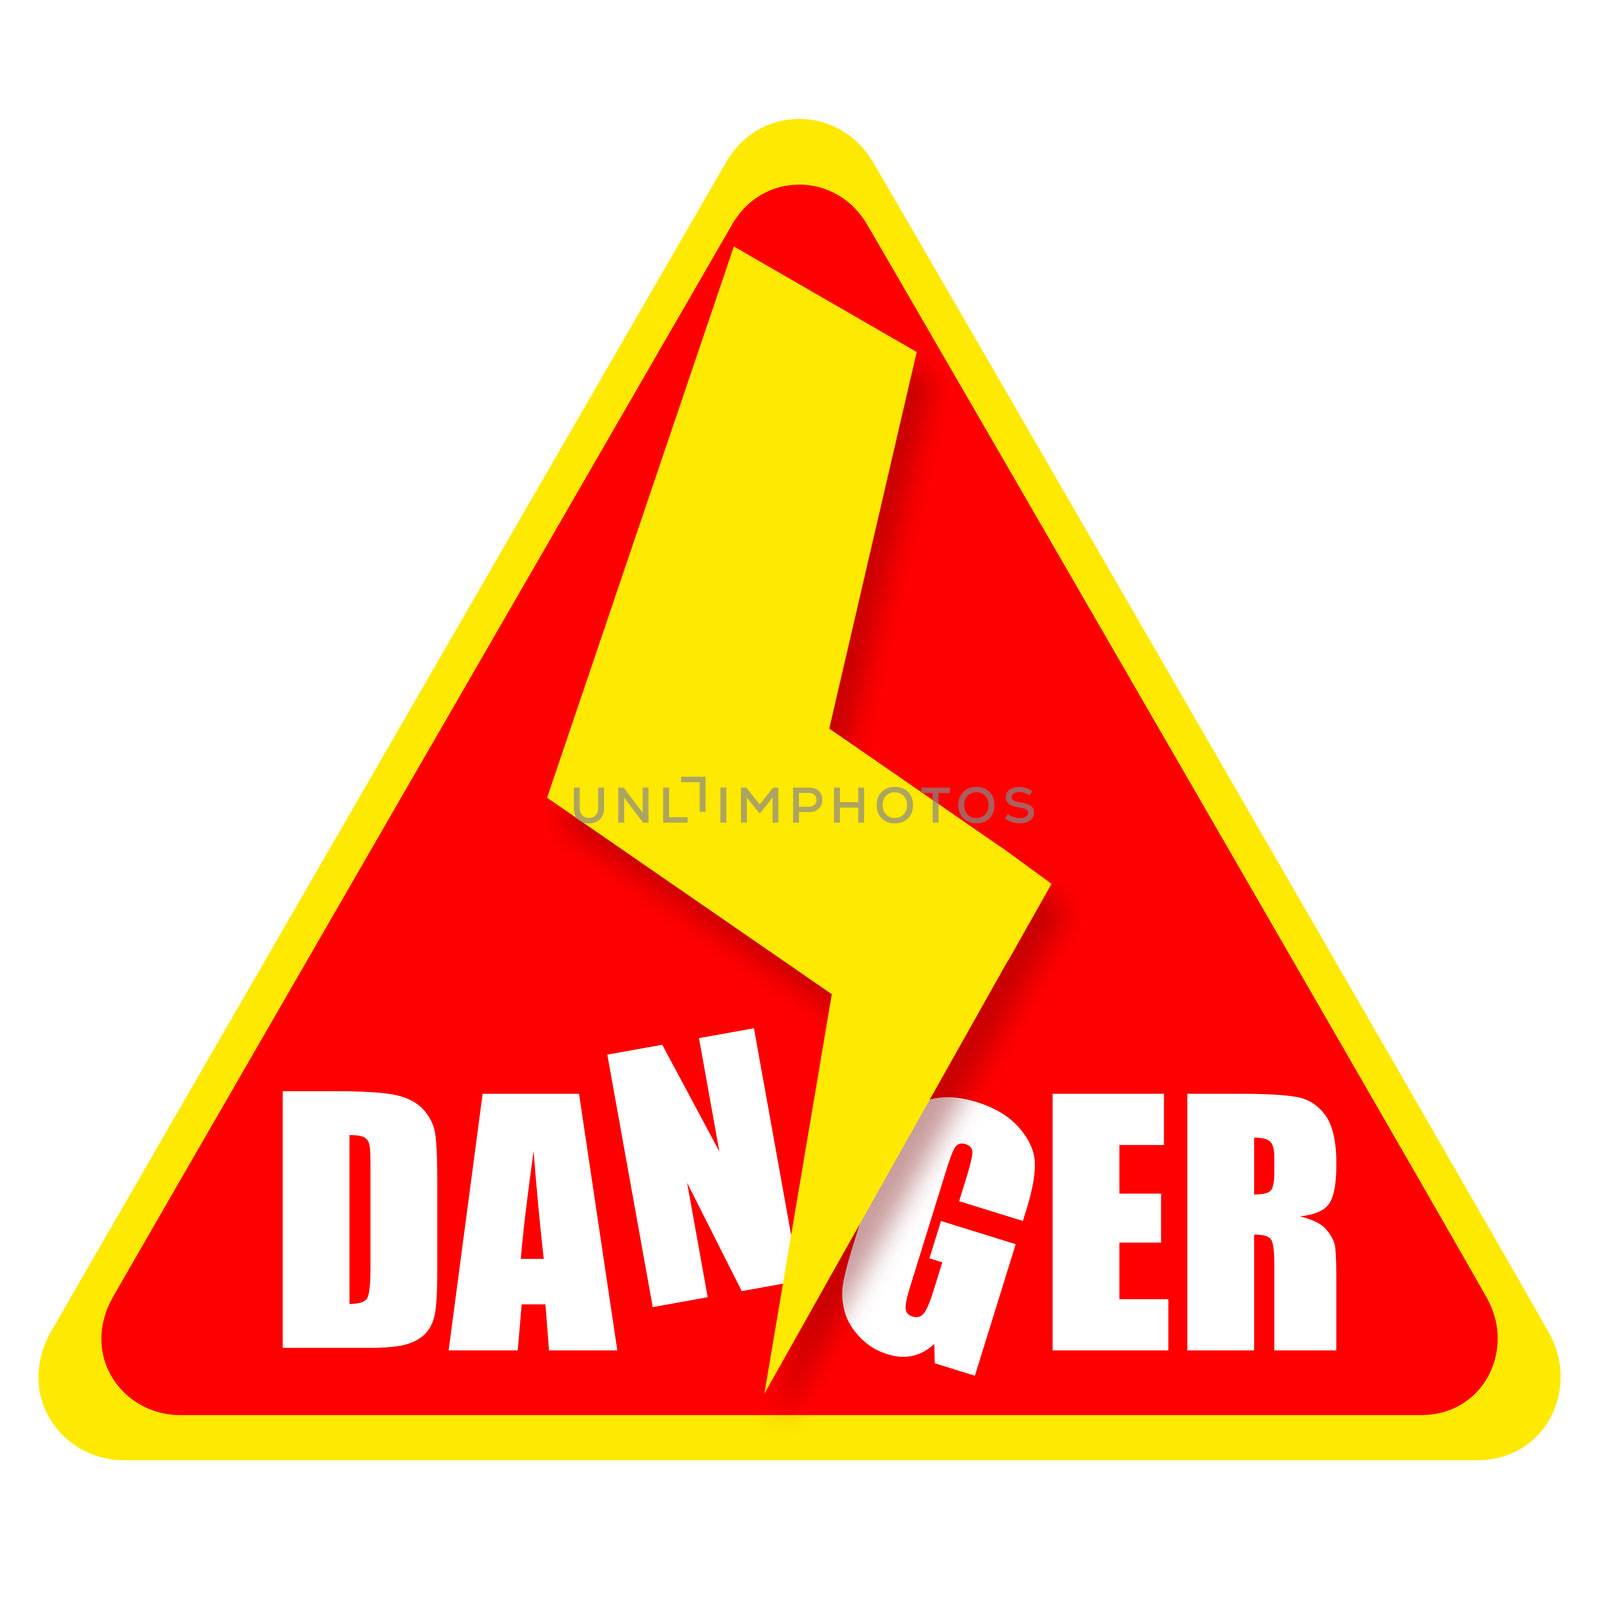 Danger sign by Skovoroda